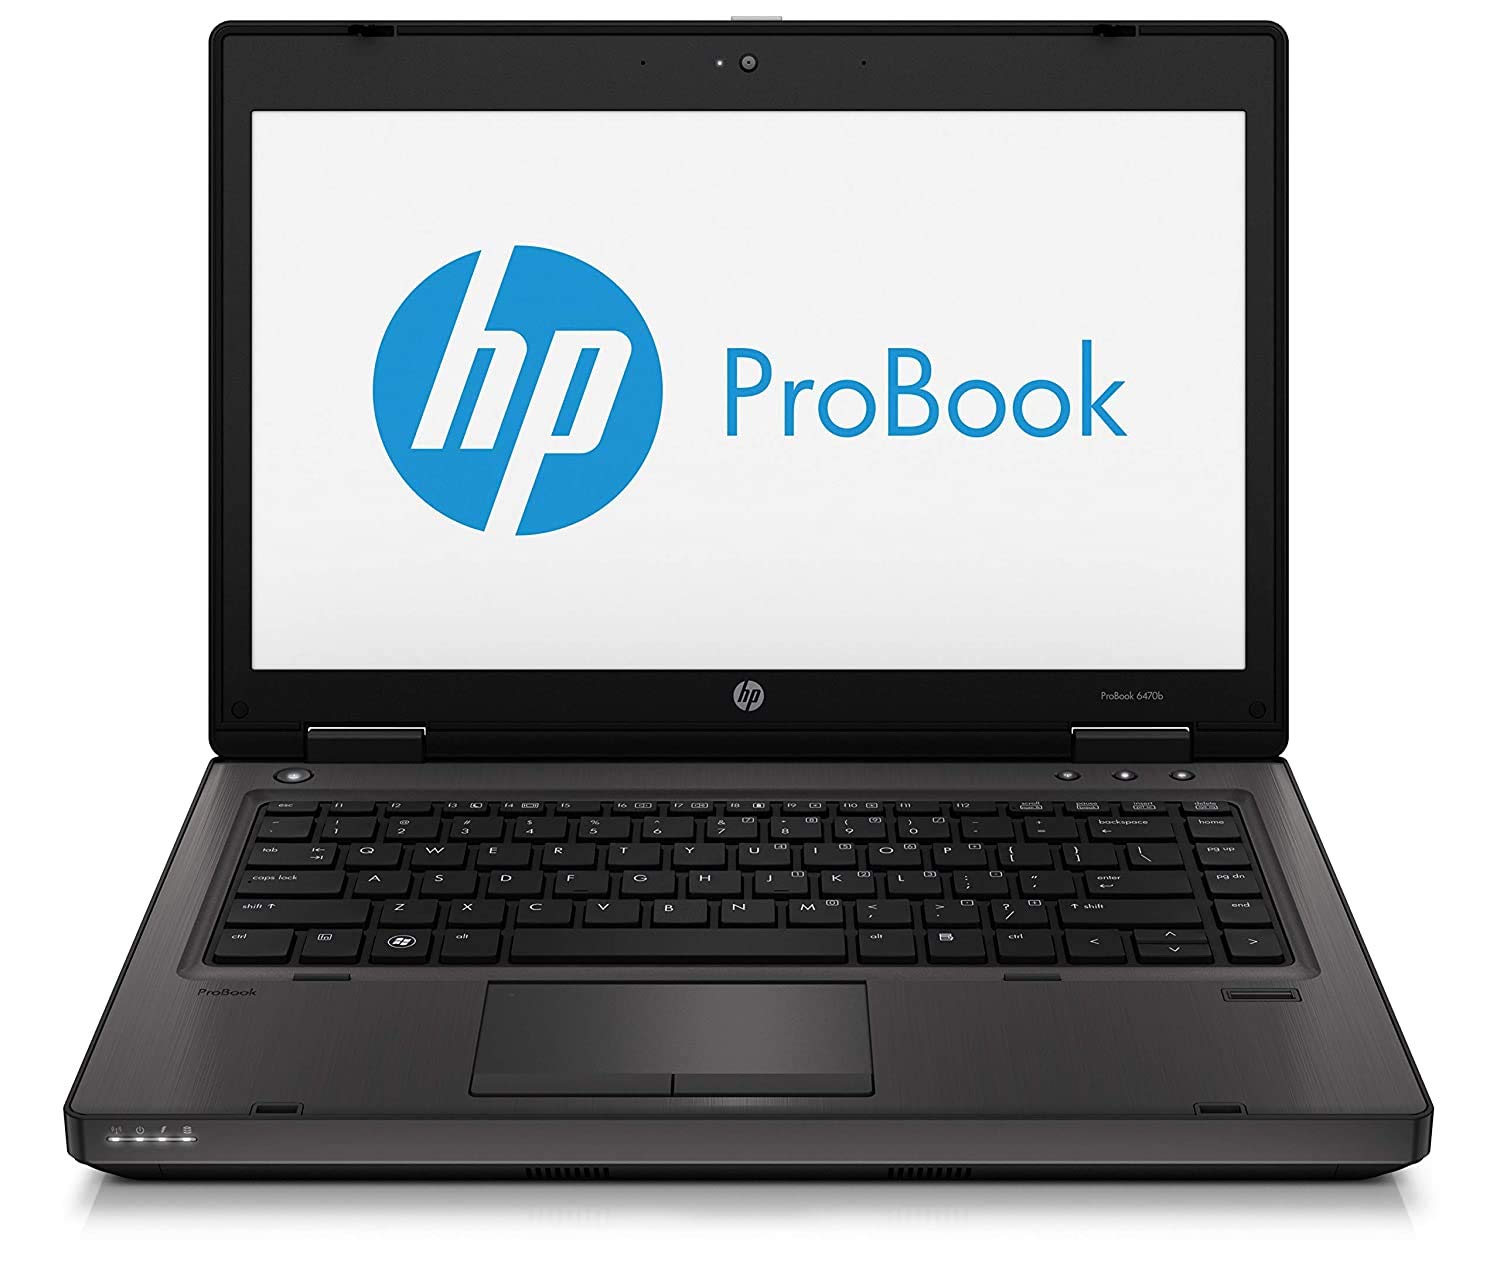 Refurbished HP 6470b ProBook i5 Laptop, 3rd Gen, 8GB Ram, 240GB SSD